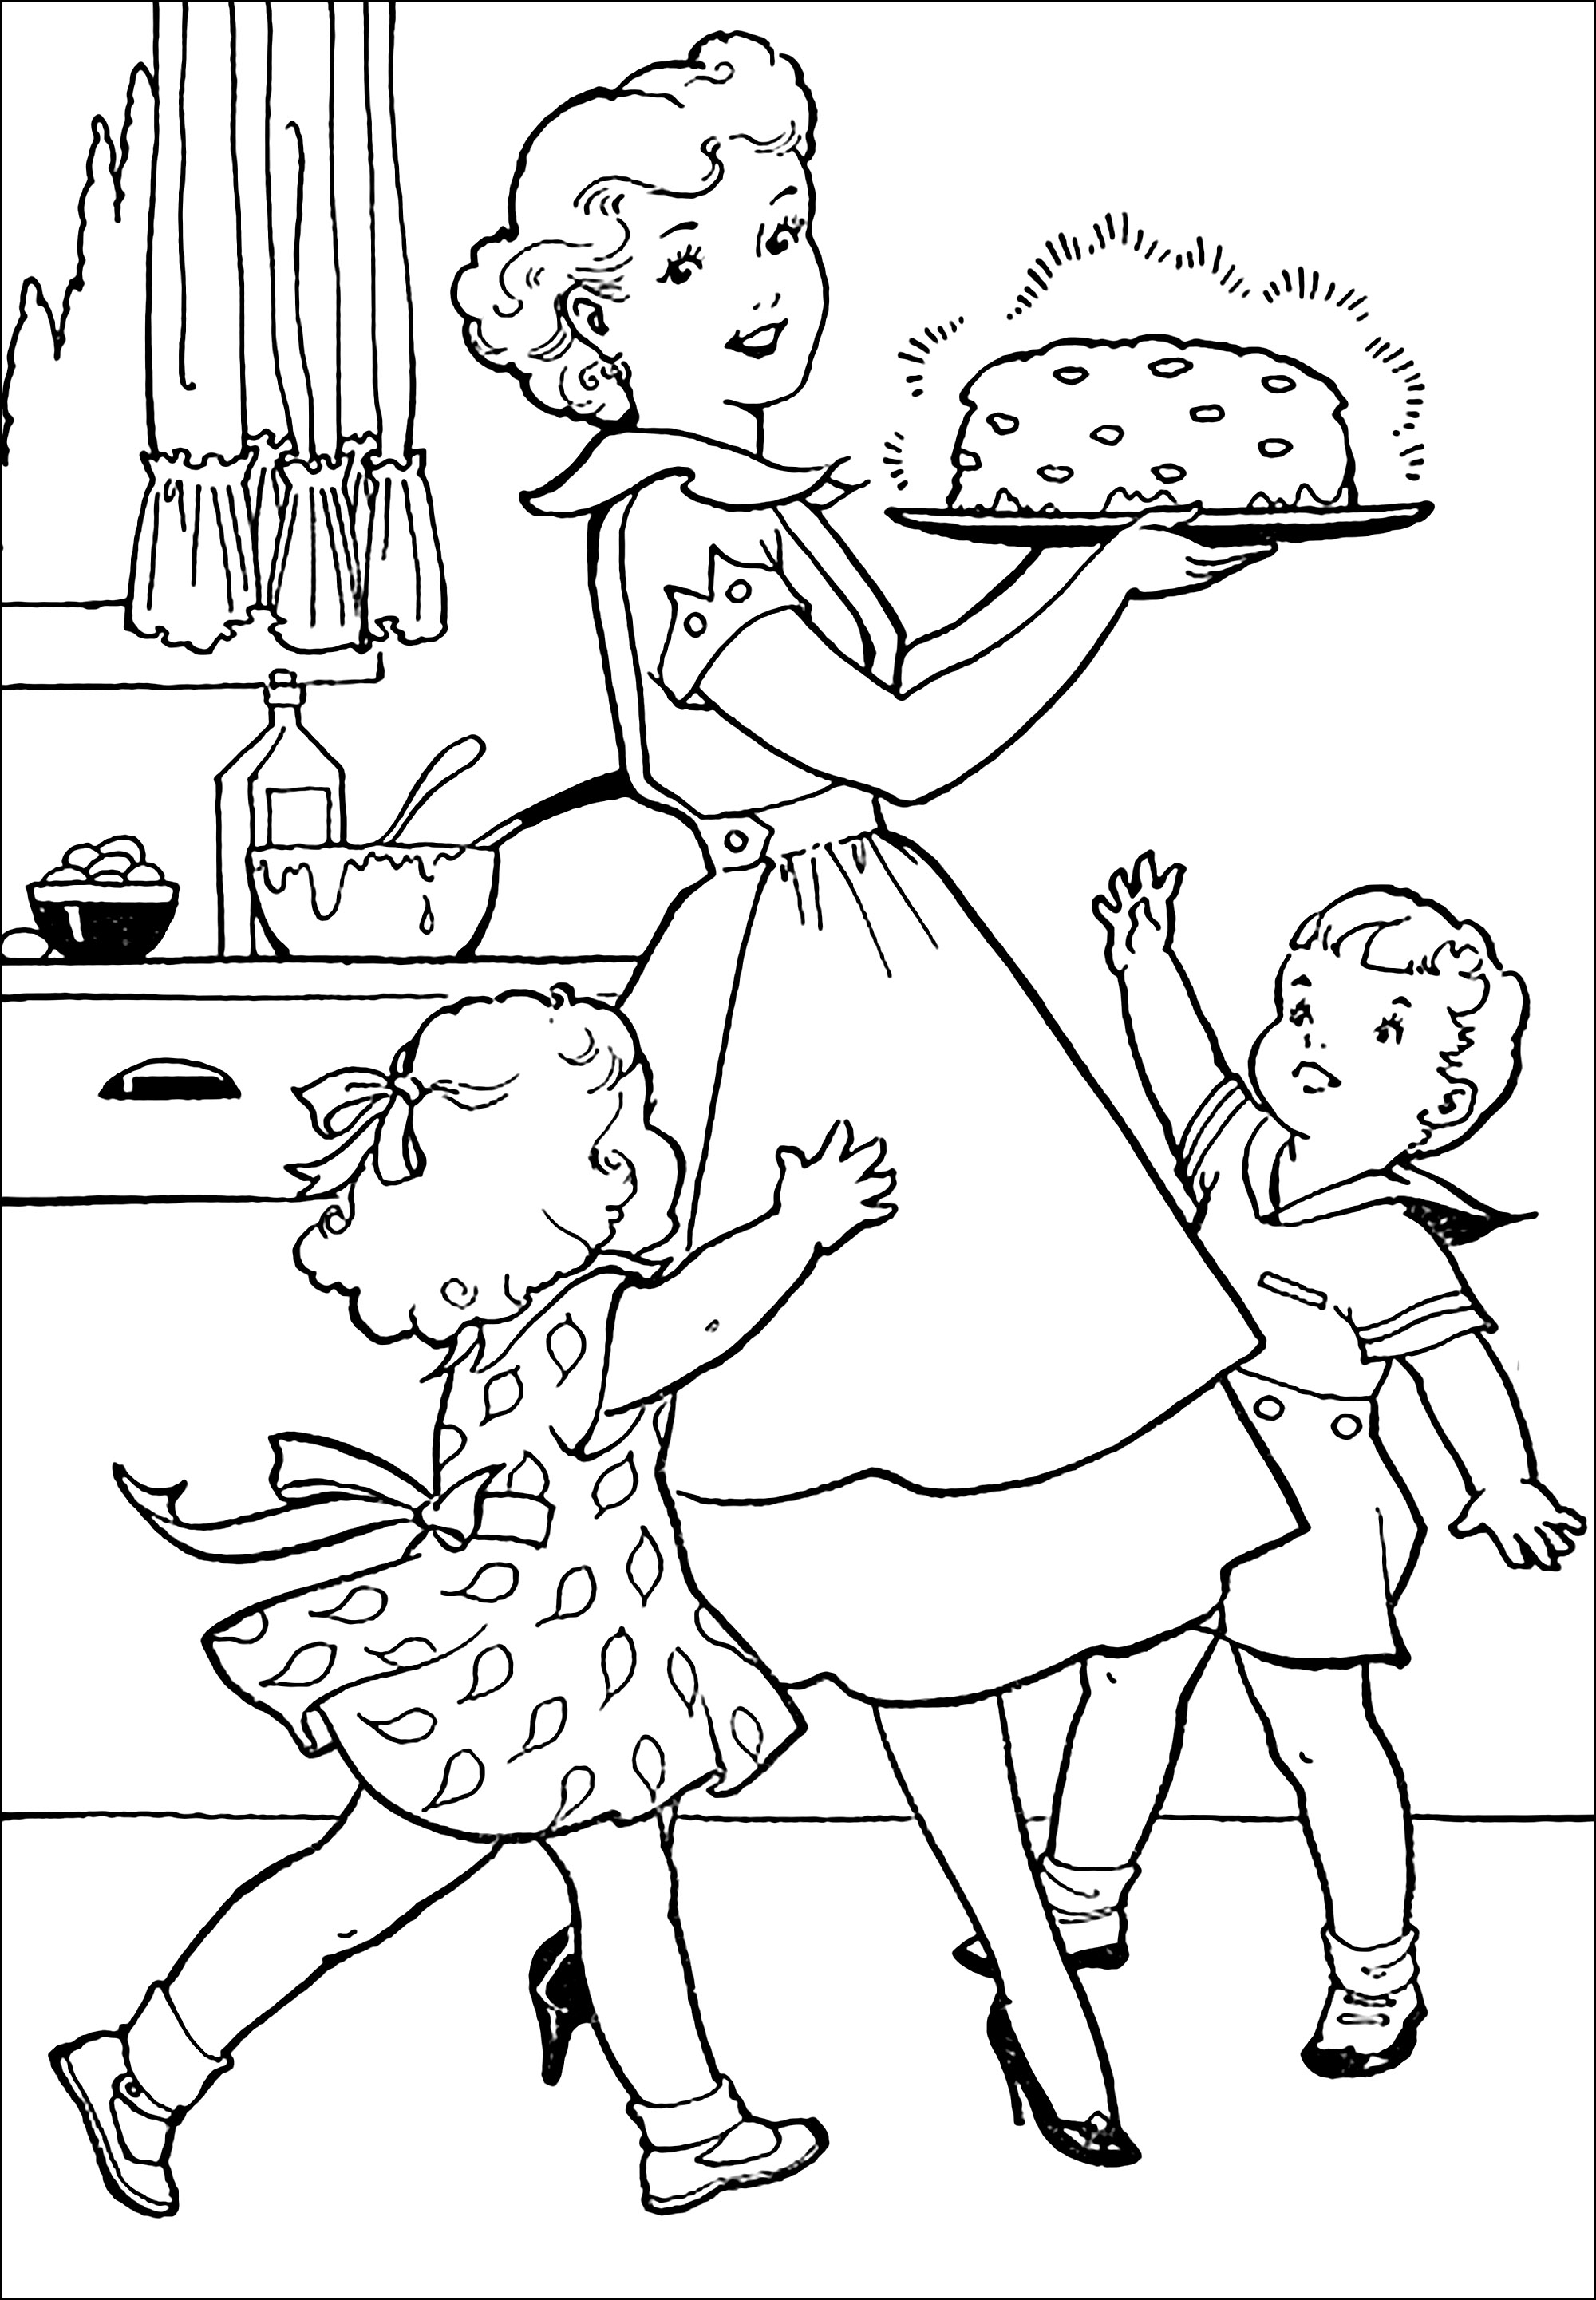 Cor dos anos 50 de uma mãe a preparar um bolo para os seus filhos